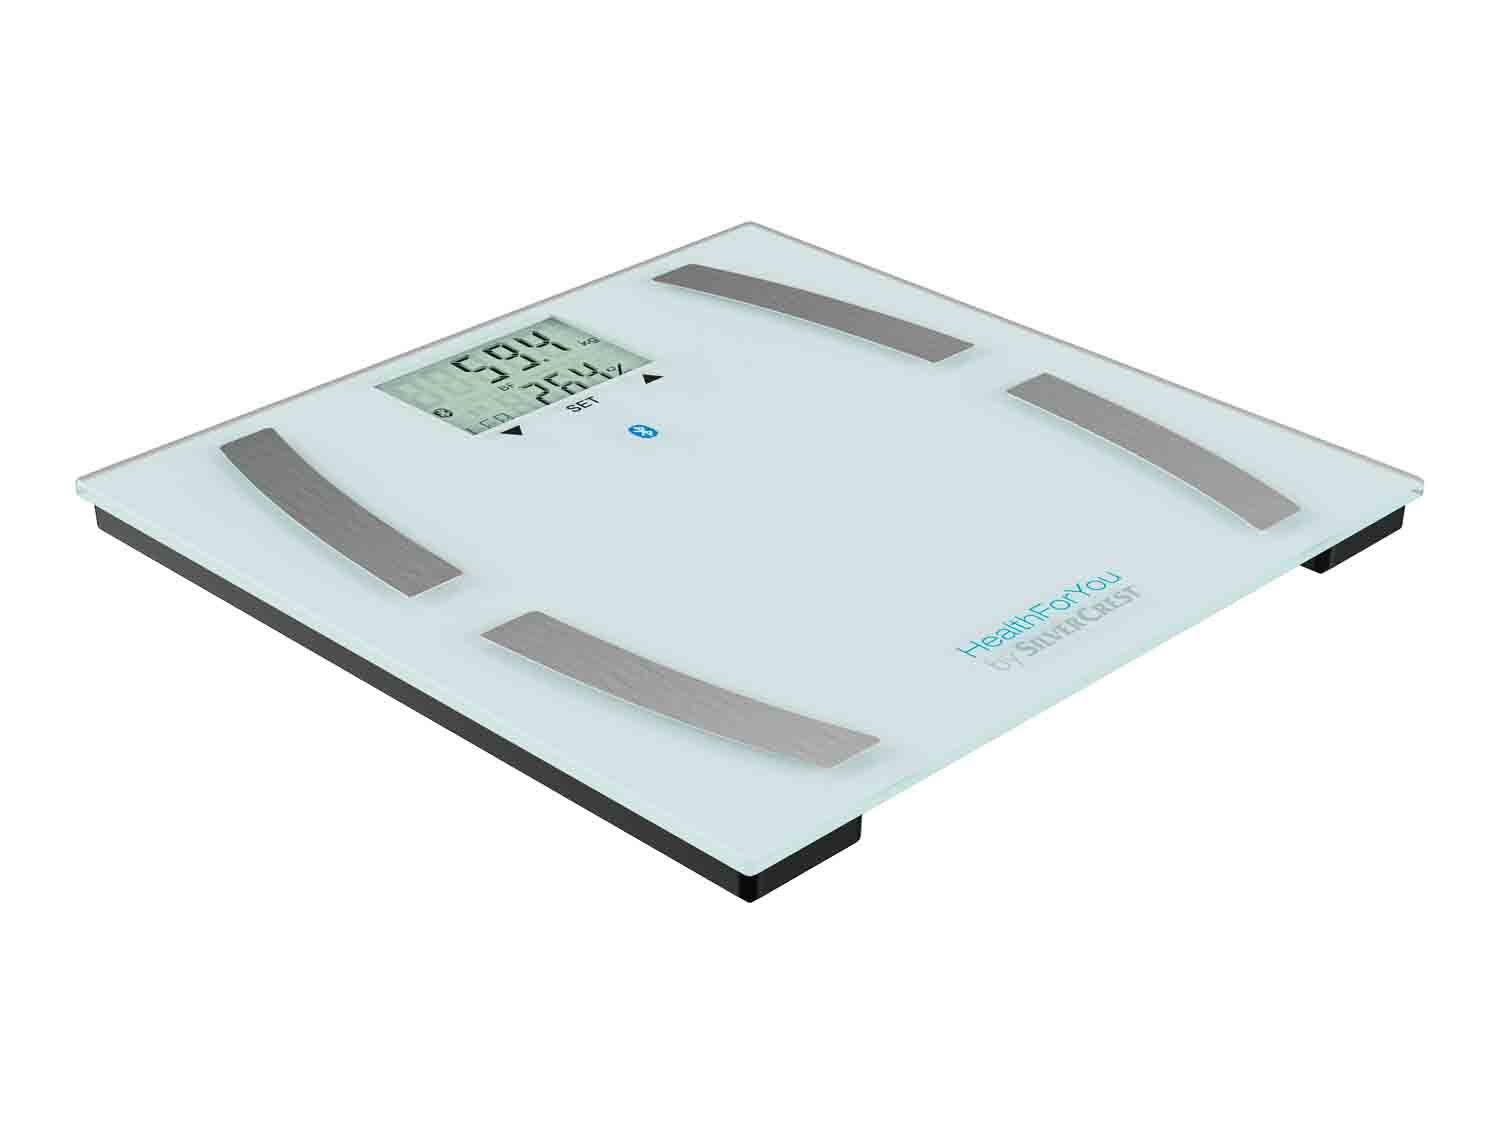 Báscula con medición de grasa corporal con App Health 4U